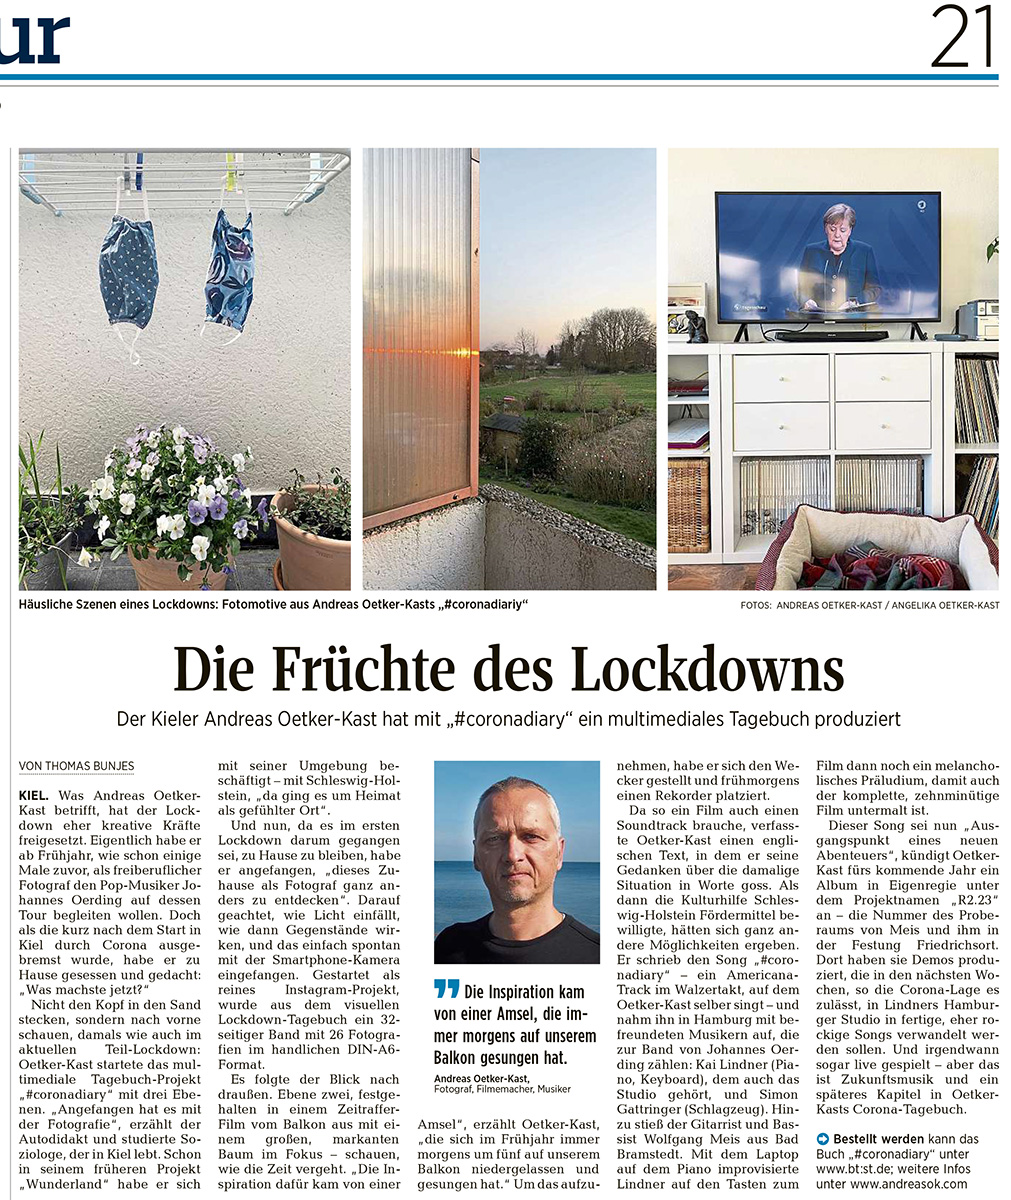 Kieler Nachrichten, Früchte des Lockdowns, Andreas Oetker-Kast